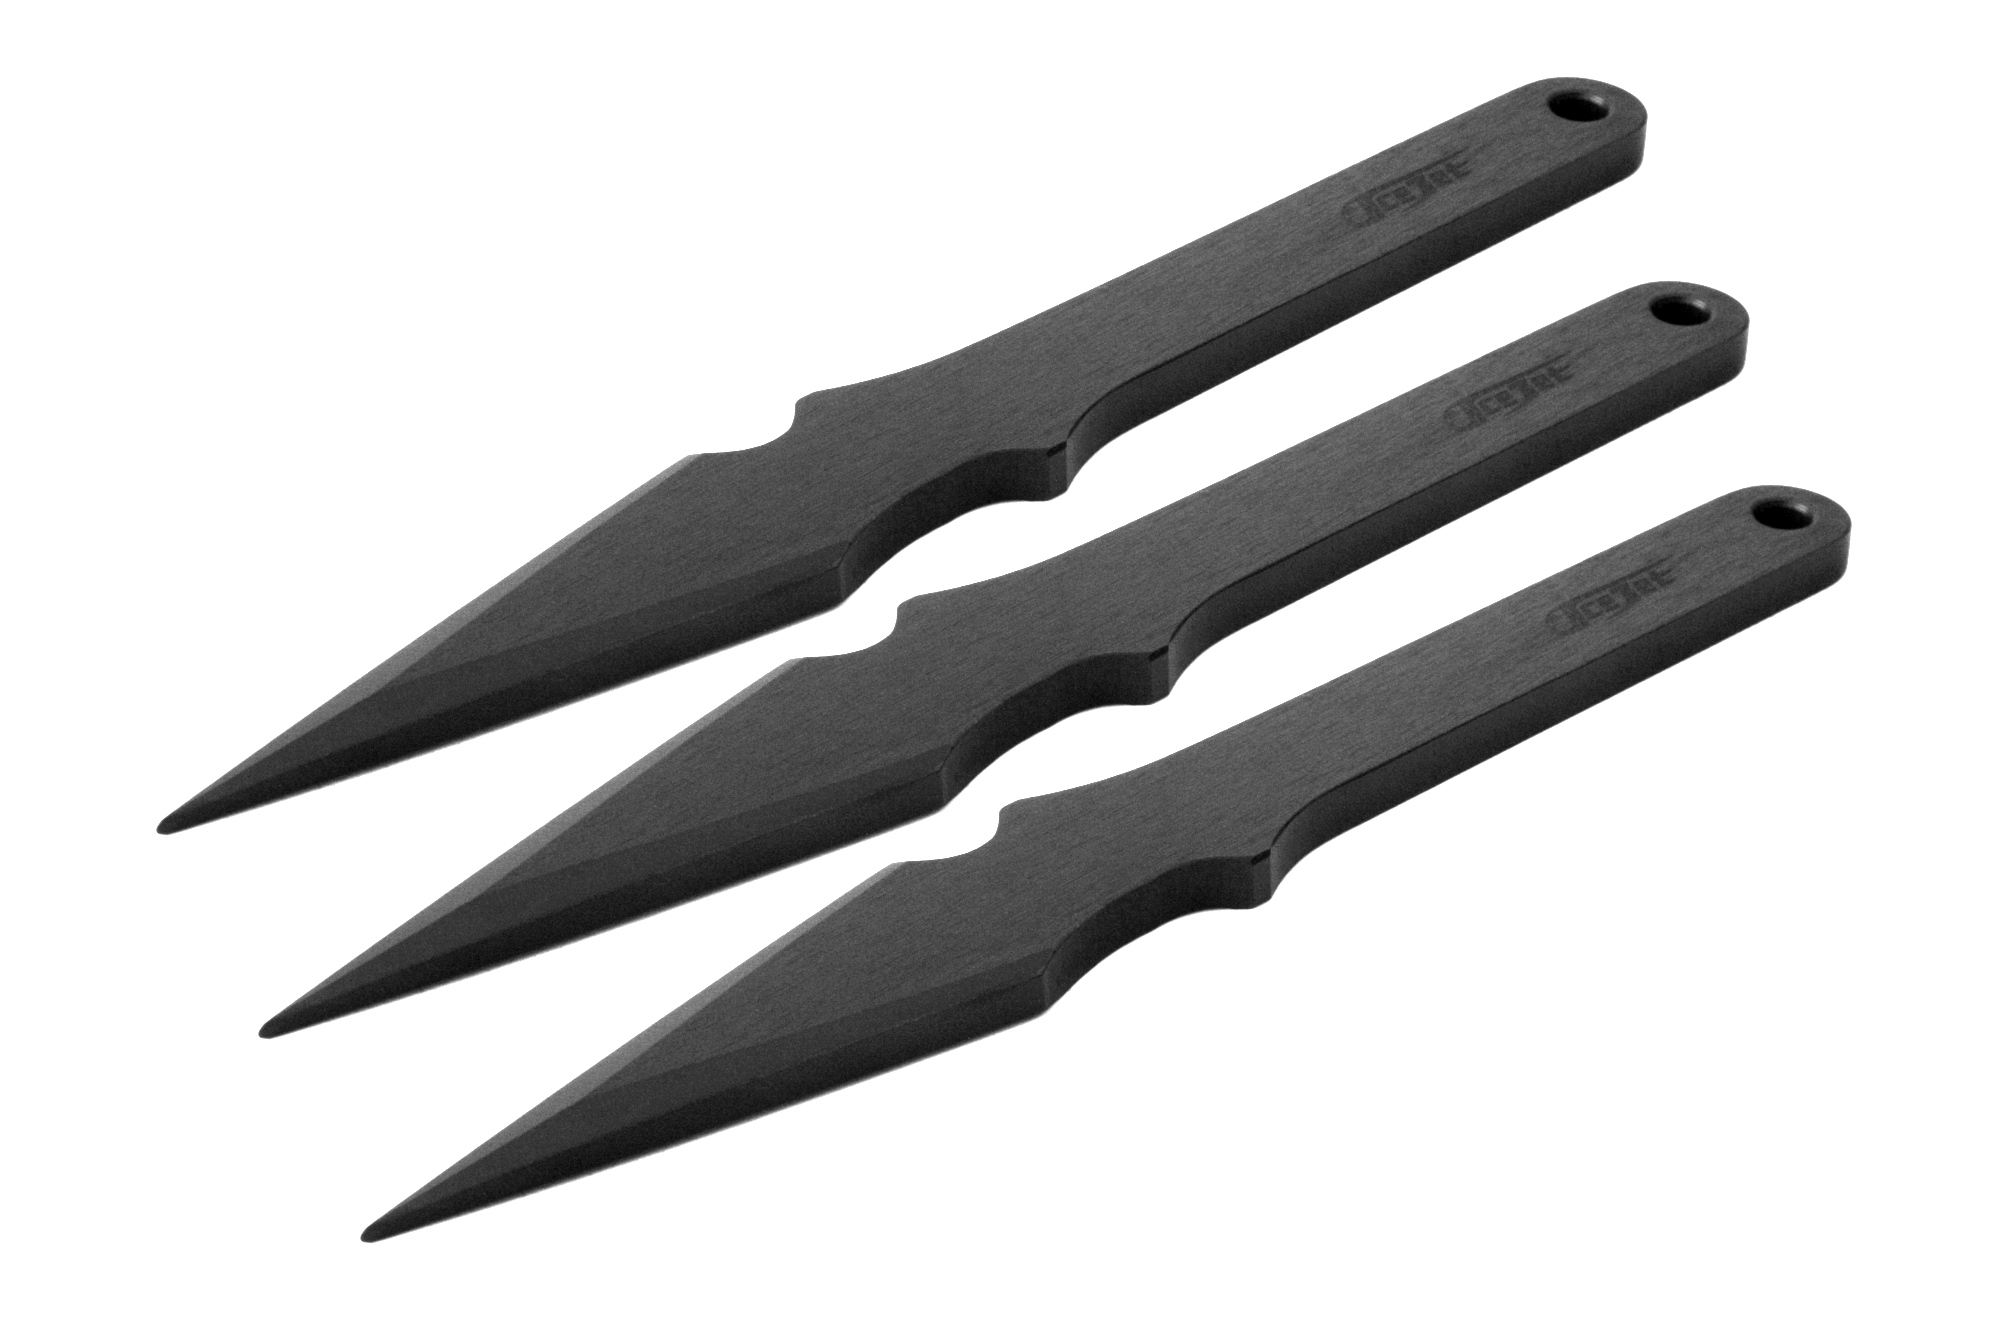 ACEJET VIPER SHADOW Steel - Throwing knife - set of 3